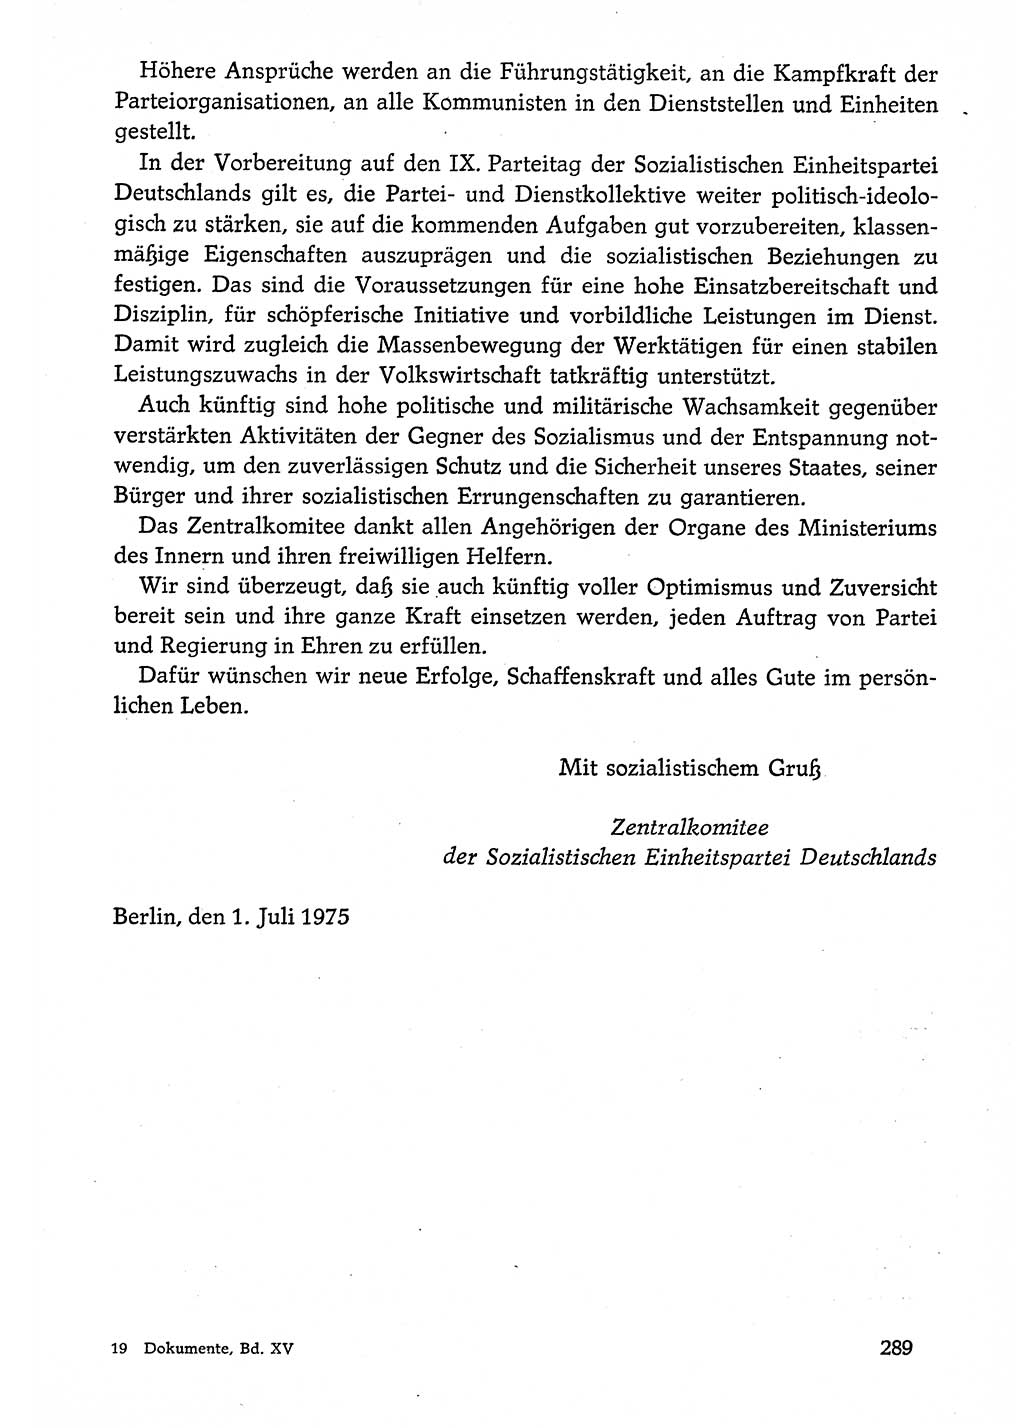 Dokumente der Sozialistischen Einheitspartei Deutschlands (SED) [Deutsche Demokratische Republik (DDR)] 1974-1975, Seite 289 (Dok. SED DDR 1978, Bd. ⅩⅤ, S. 289)